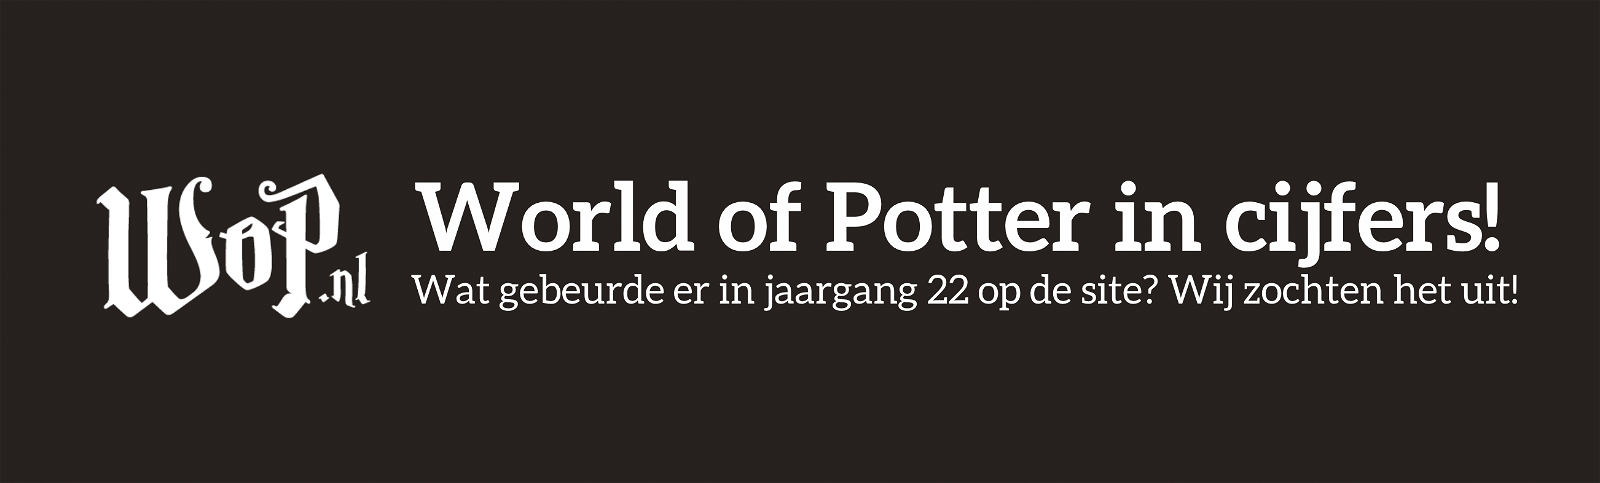 World of Potter in cijfers - Jaargang 22